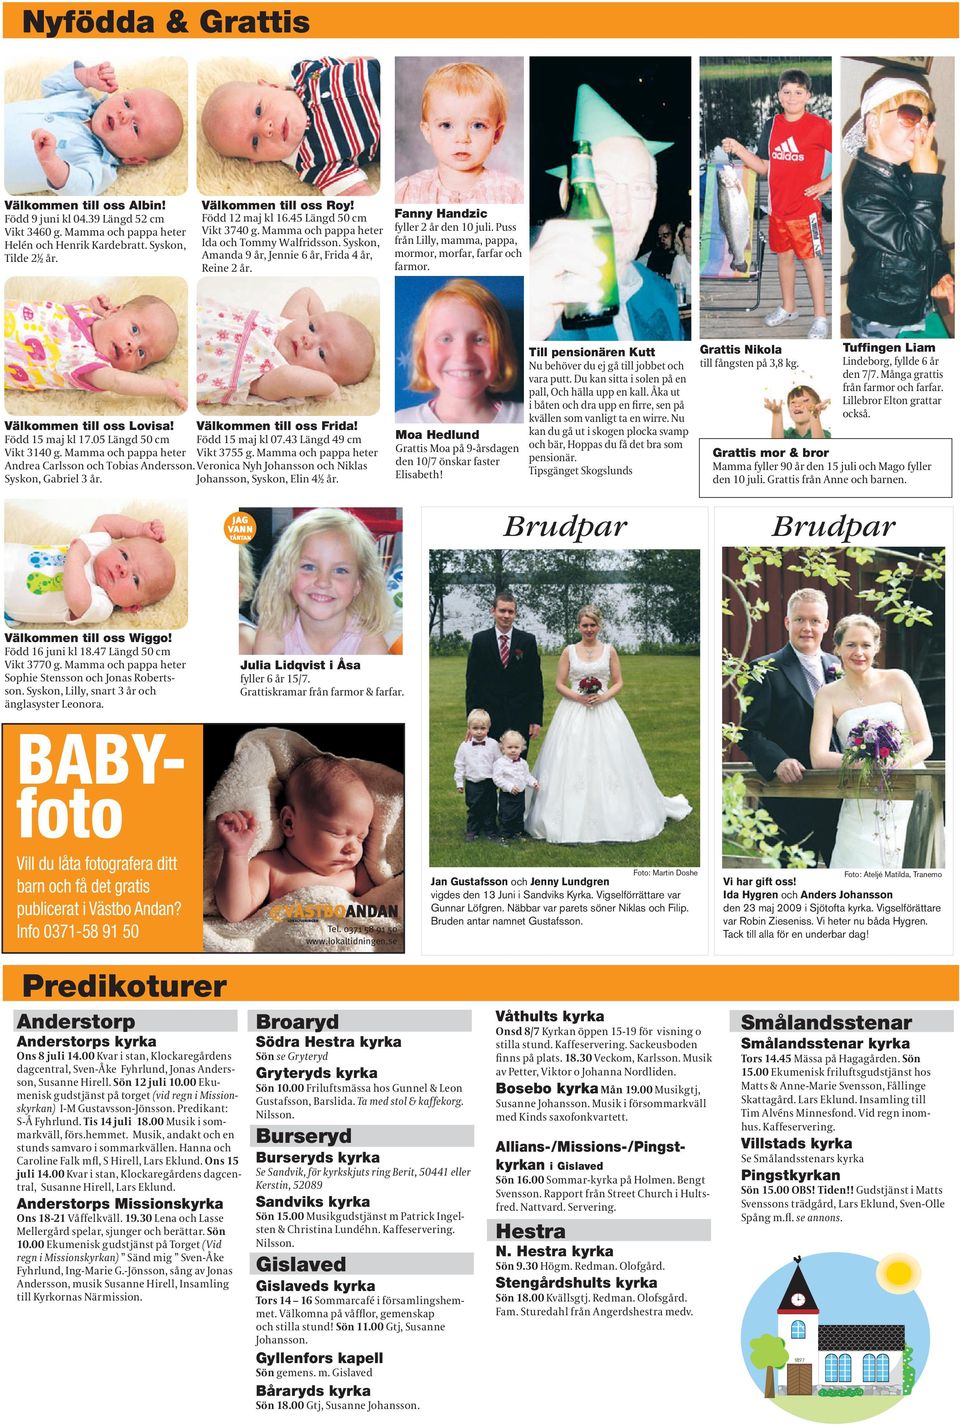 Julia Lidqvist i Åsa BABYfoto Vill du låta fotografera ditt barn och få det gratis publicerat i Västbo Andan? Info 0371-58 91 50 Tel. 0371 58 91 50 www.lokaltidningen.